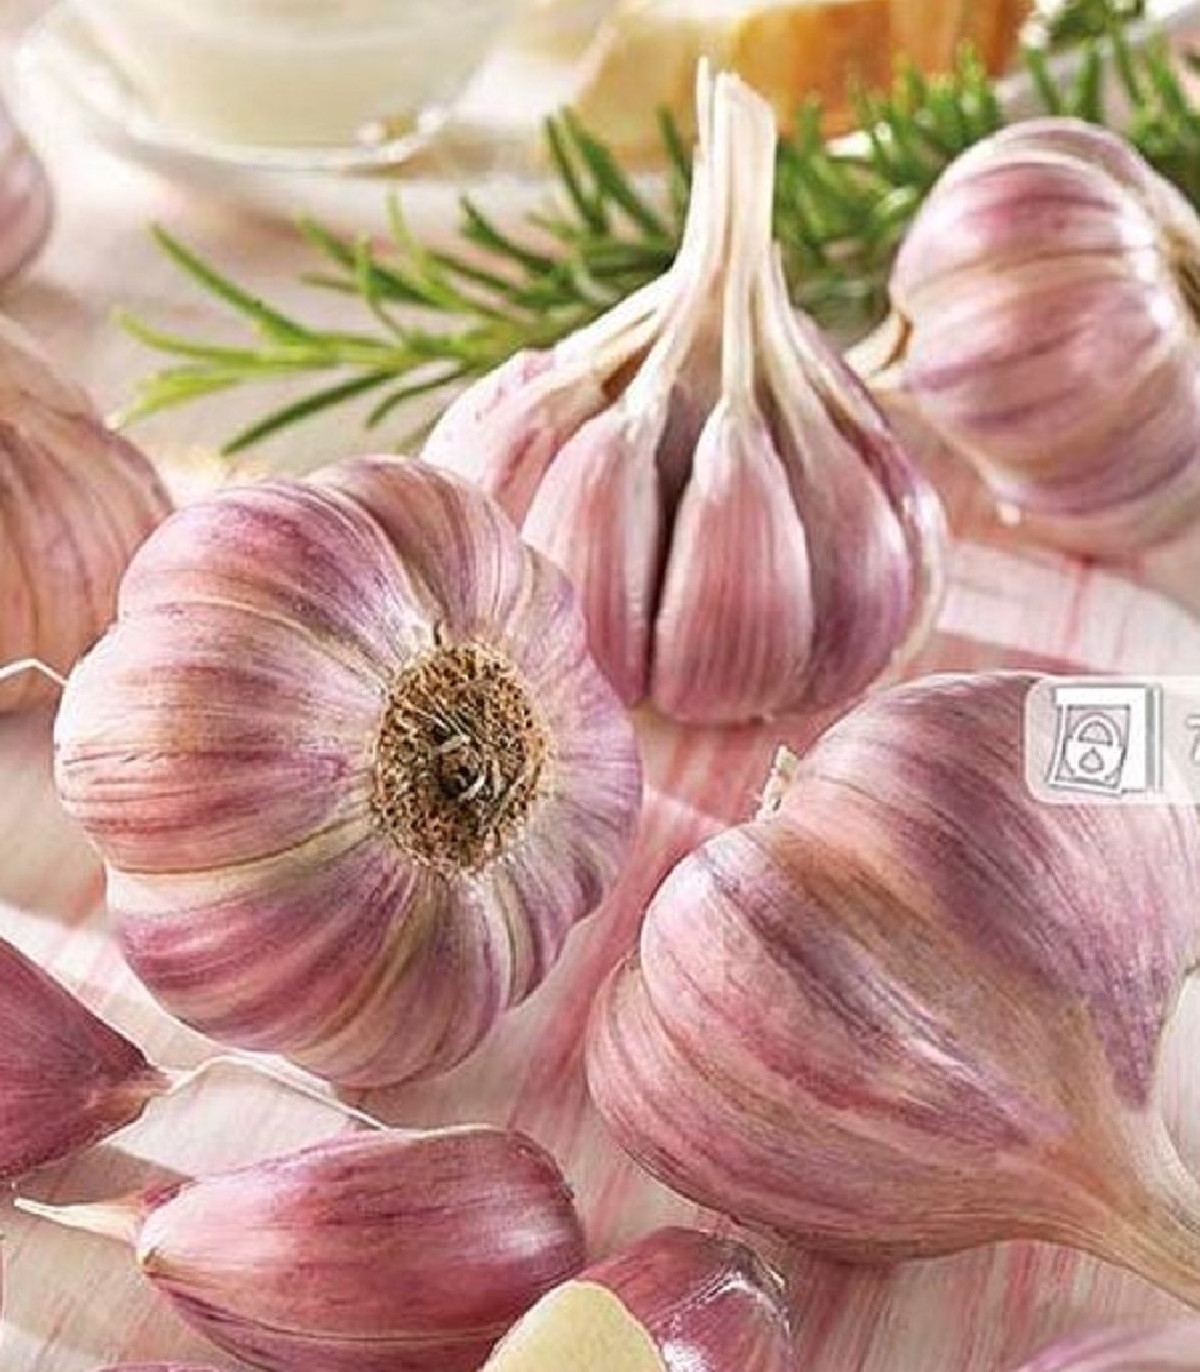 Sadbový cesnak Germidour - Allium sativum - nepaličiak - cibule cesnaku - 1 balenie